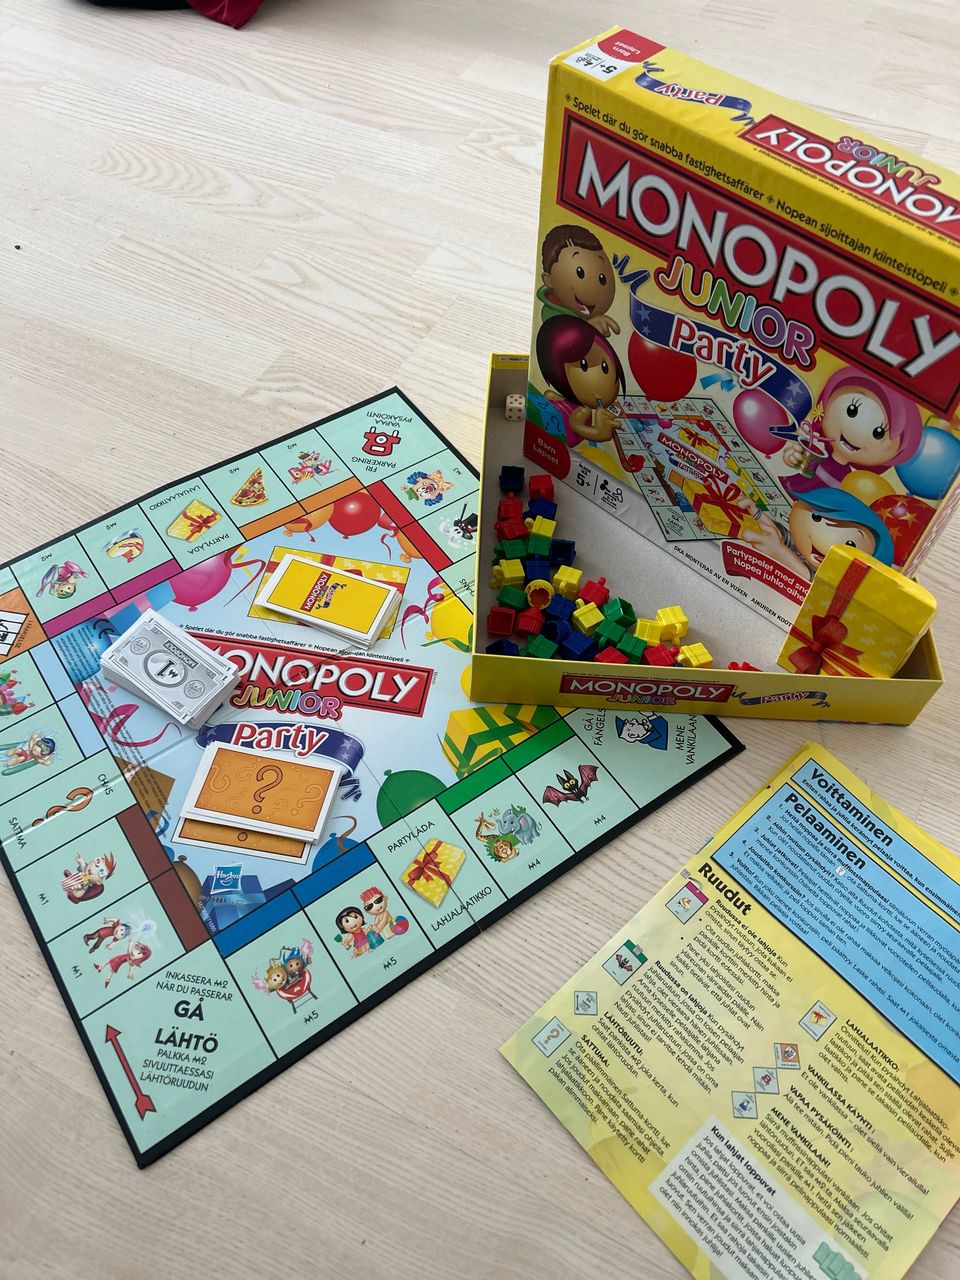 Monopoly junior party lautapeli